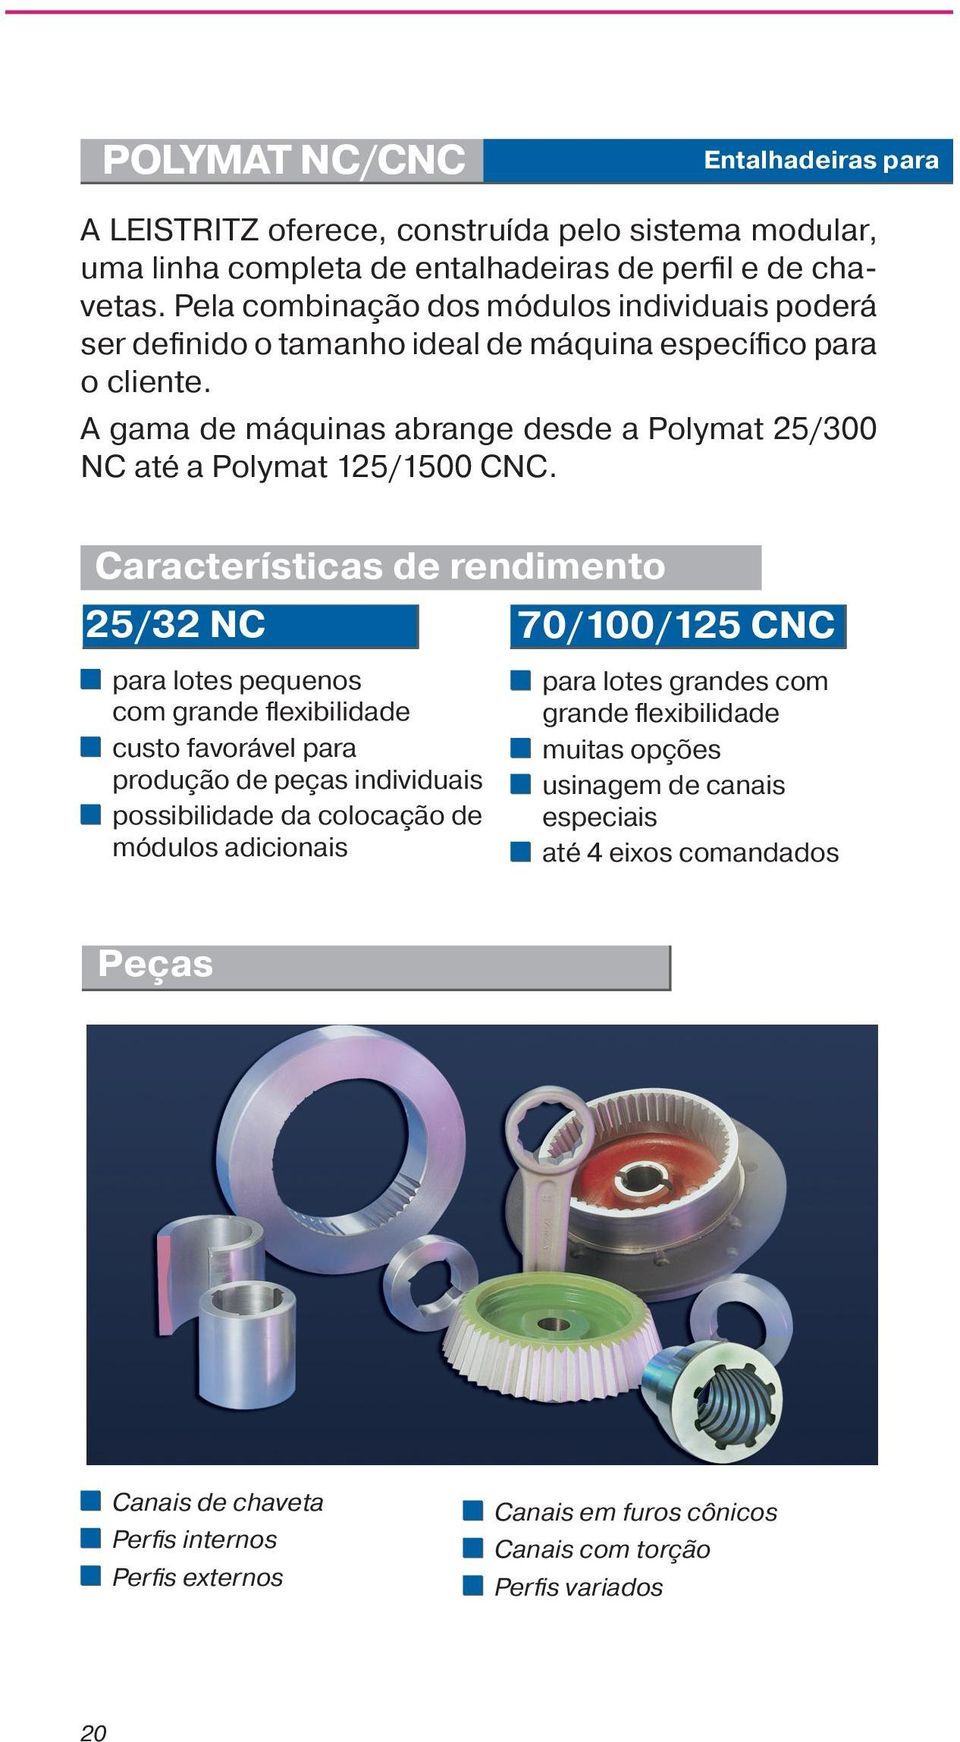 A gama de máquinas abrange desde a Polymat 25/300 NC até a Polymat 125/1500 CNC.